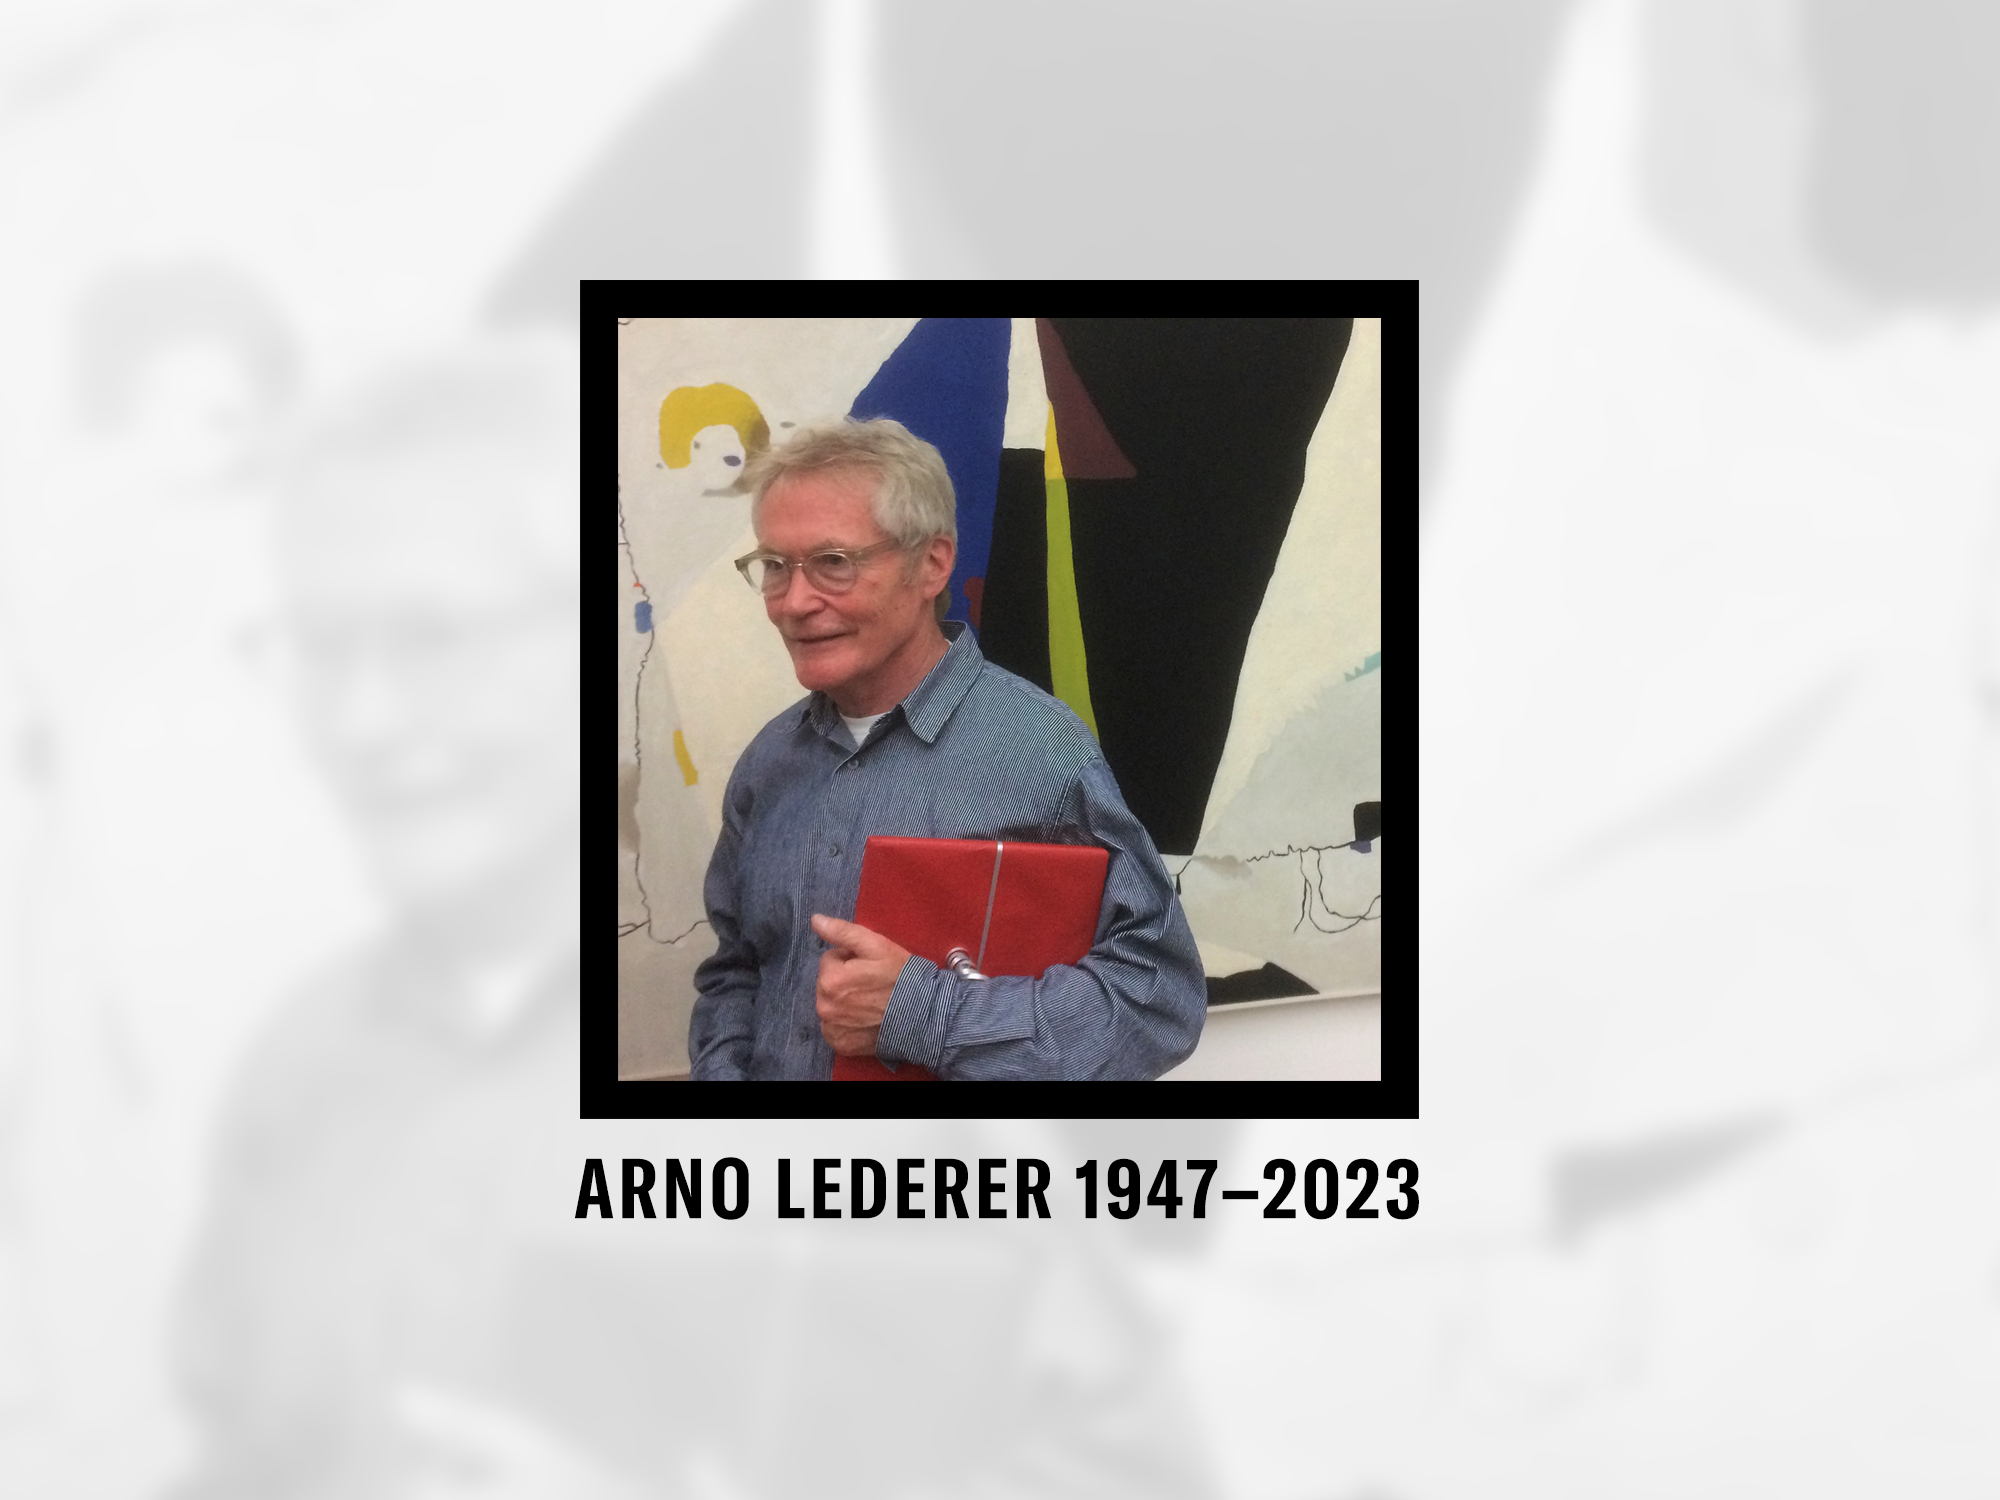 Arno Lederer